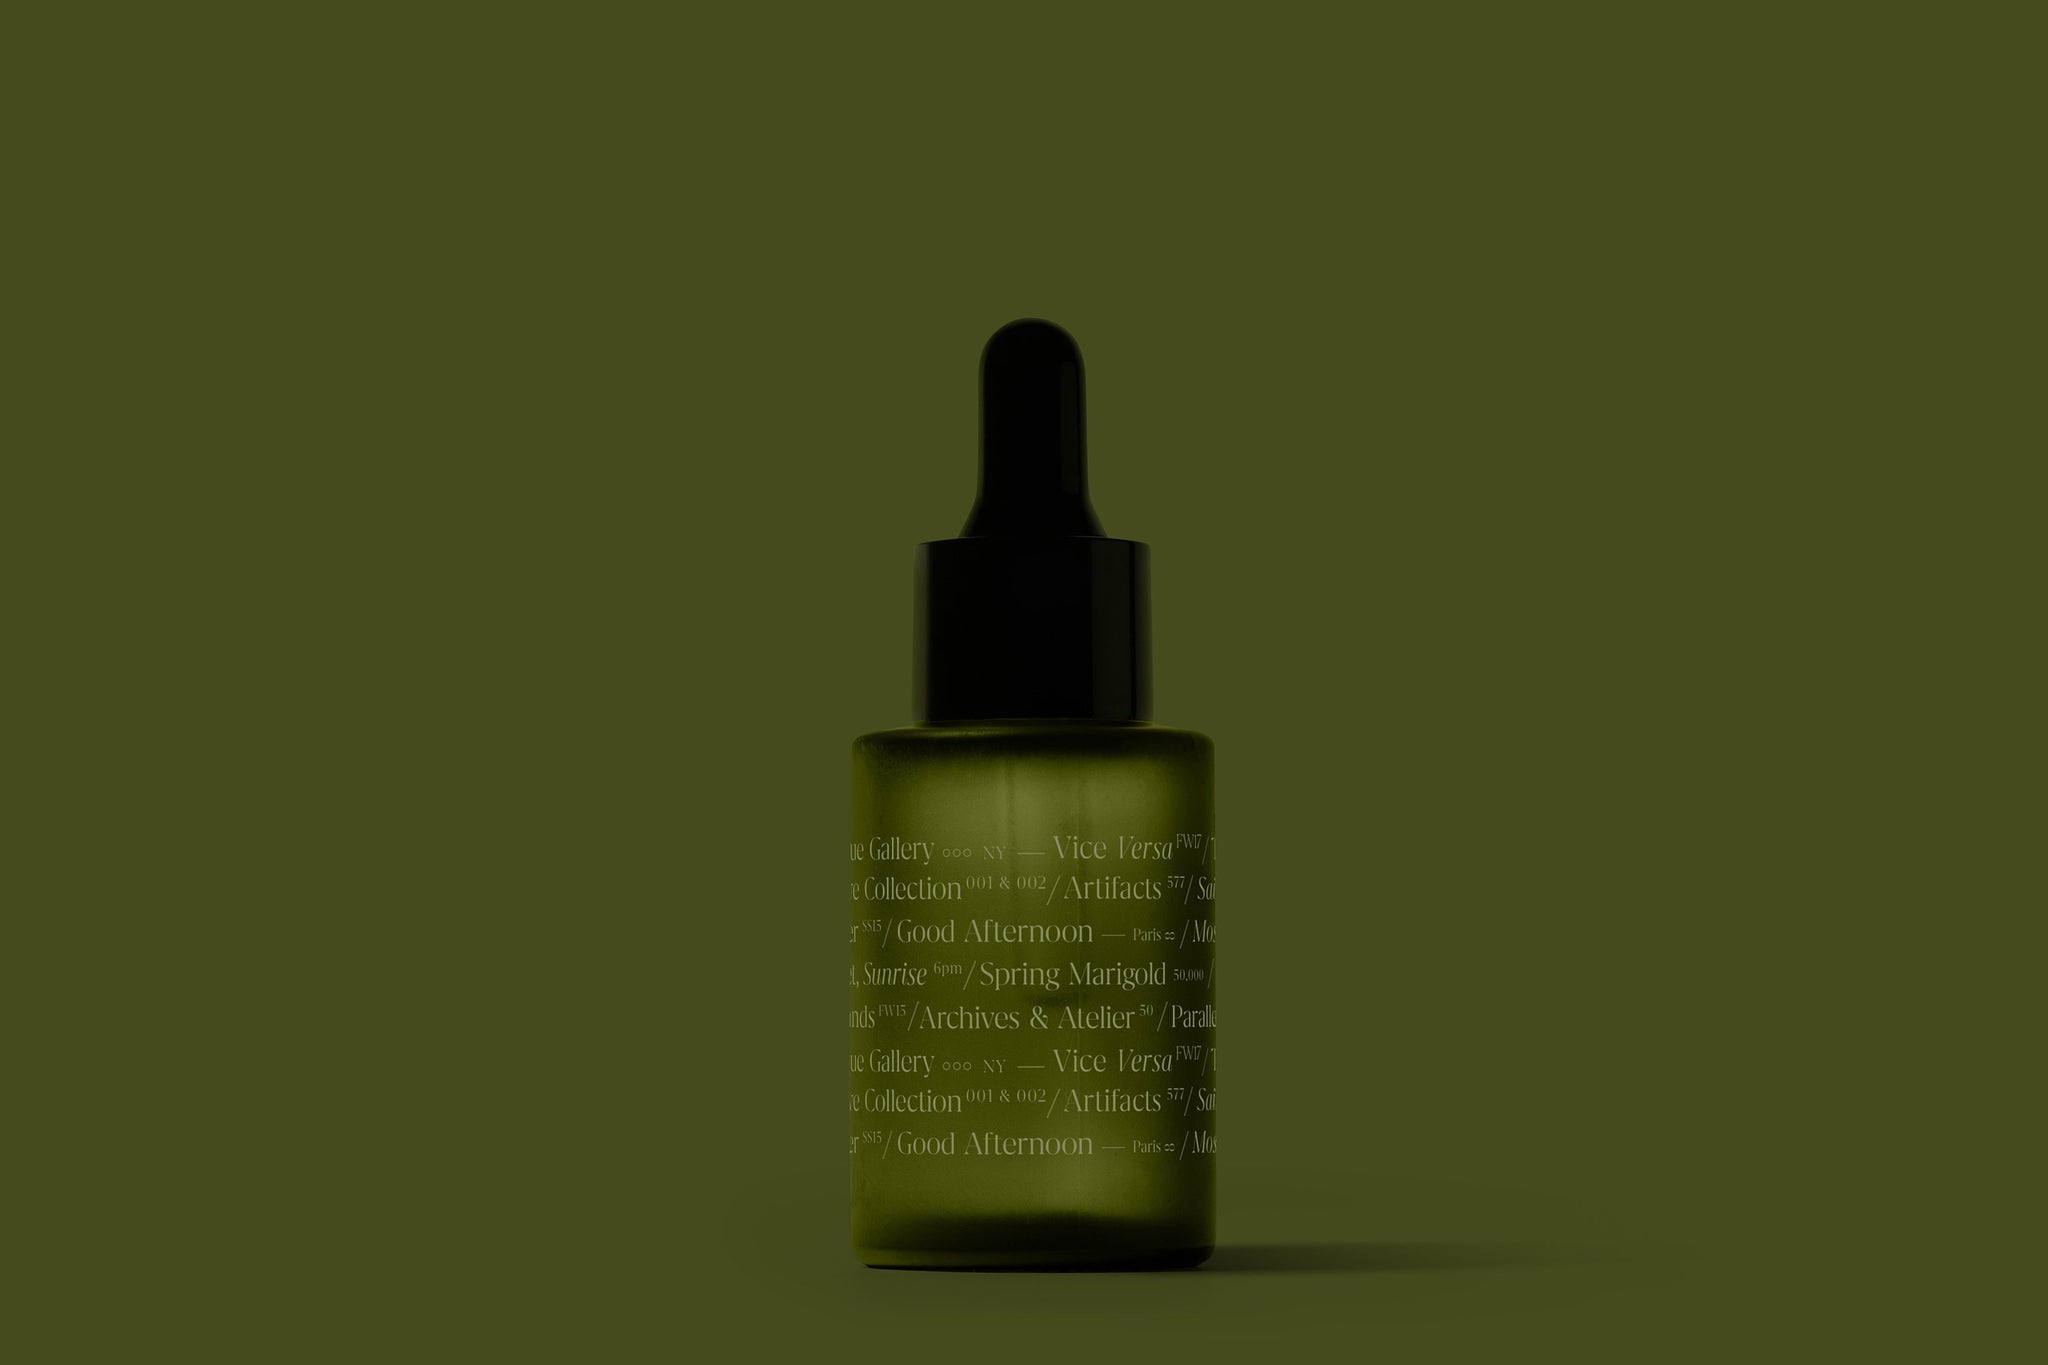 Frosted Amber Dropper Bottle Mockup - Copal Studio Packaging Mockups For Designers